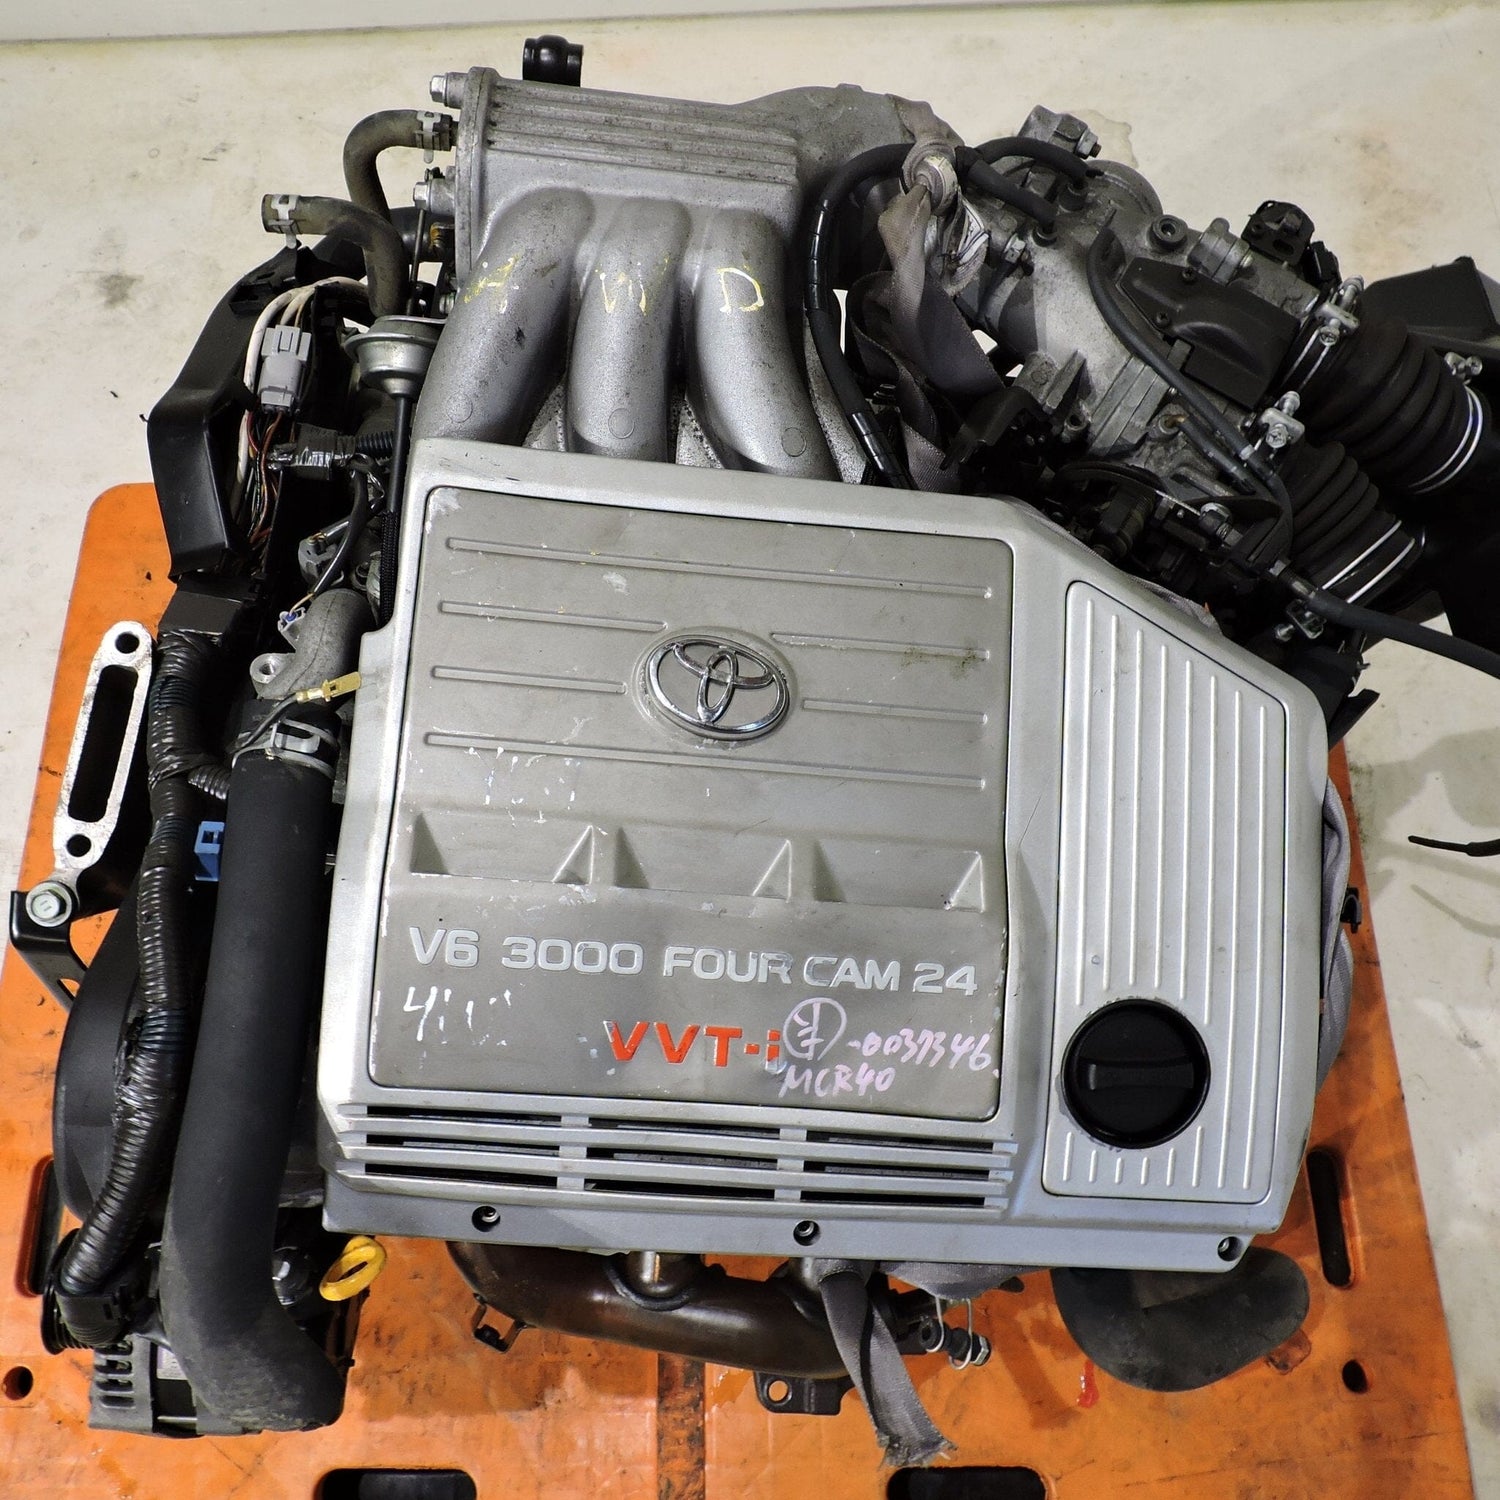 Toyota Highlander 2001-2003 3.0L V6 JDM Awd Engine - 1MZ-FE